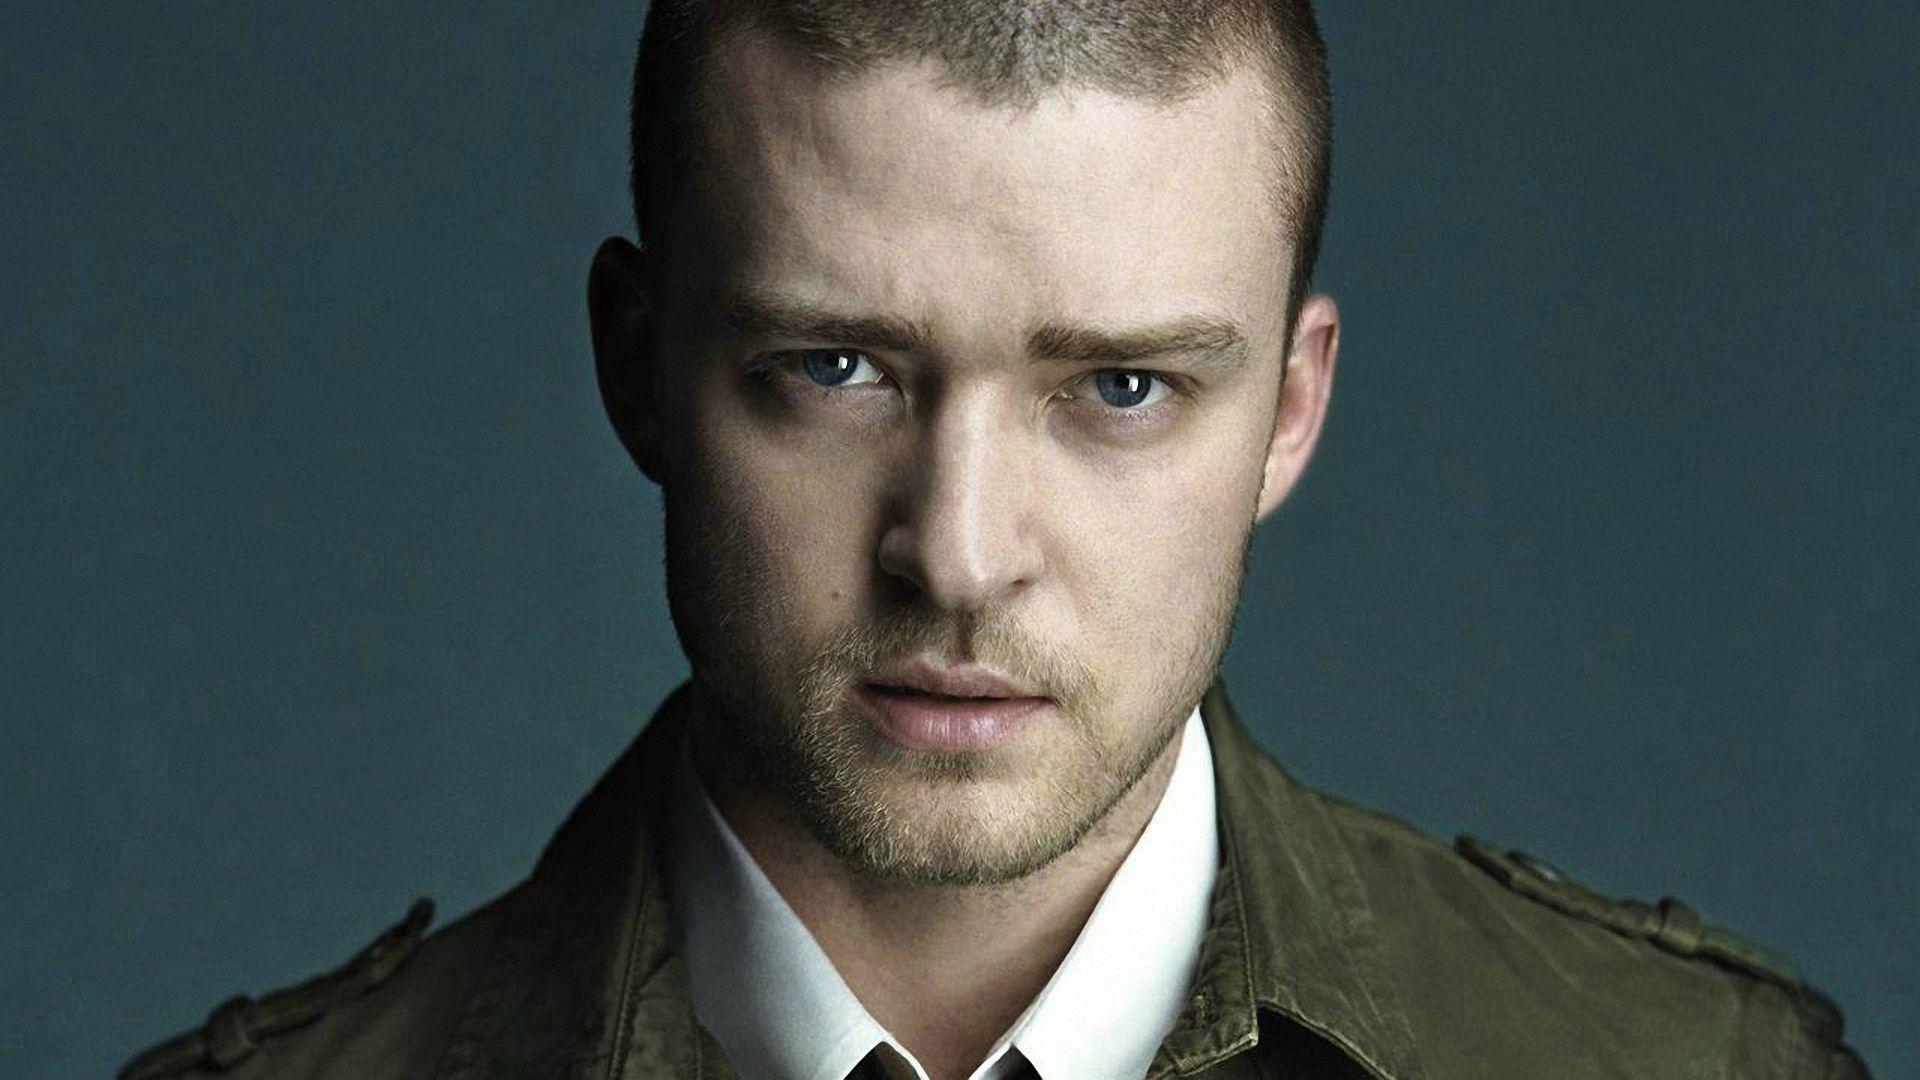 Justin Timberlake Wallpaper, Picture, Image